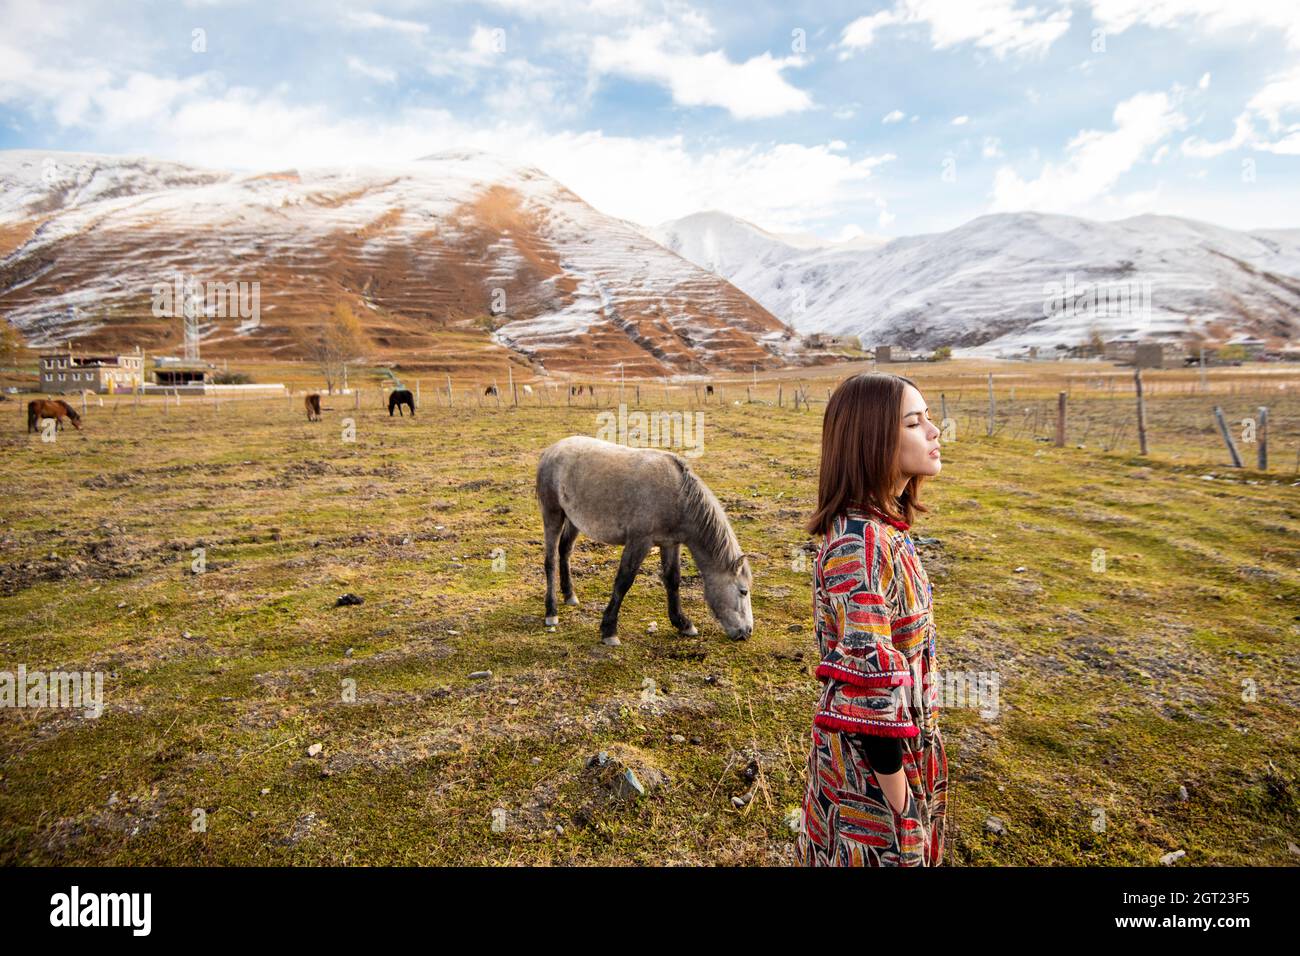 Vue latérale d'une femme debout sur le terrain contre les montagnes enneigées Banque D'Images